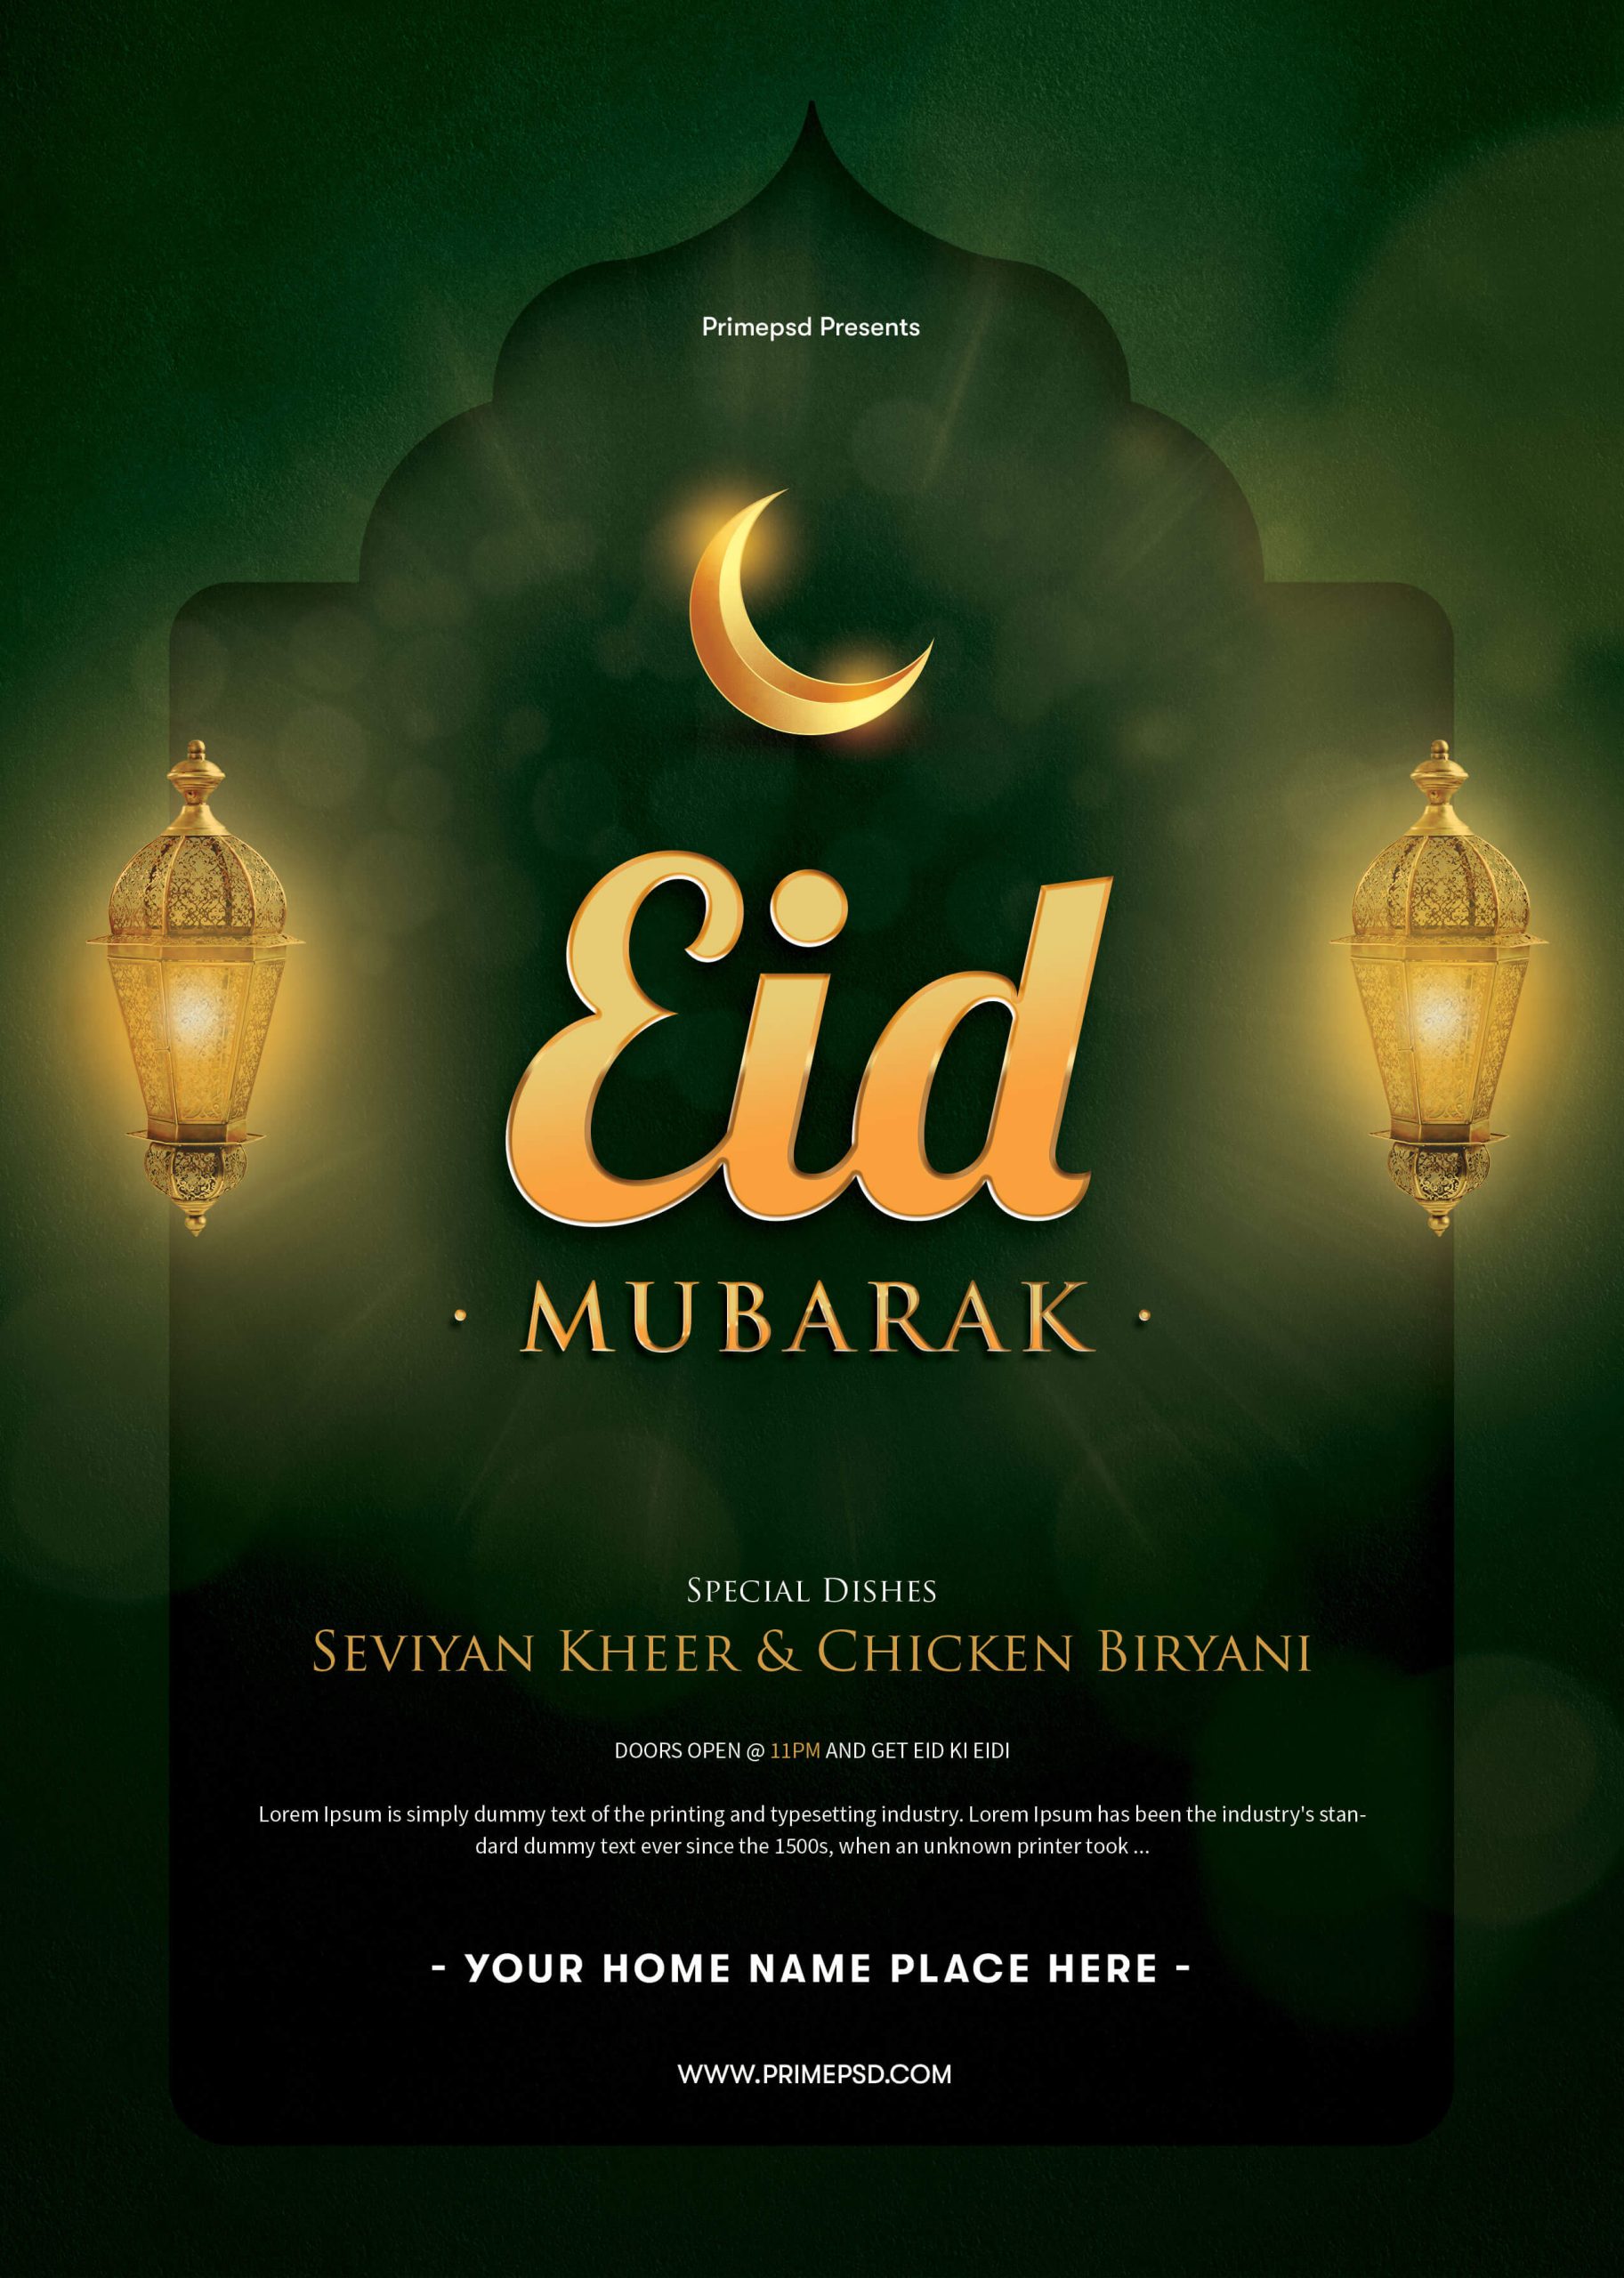 Eid mubarak, Eid mubarak flyer, Eid mubarak flyer psd, Eid mubarak free, Eid mubarak free flyer, primepsd, eid flyer psd, creative design, creative eid mubarak flyer, eid mubarak flyer green